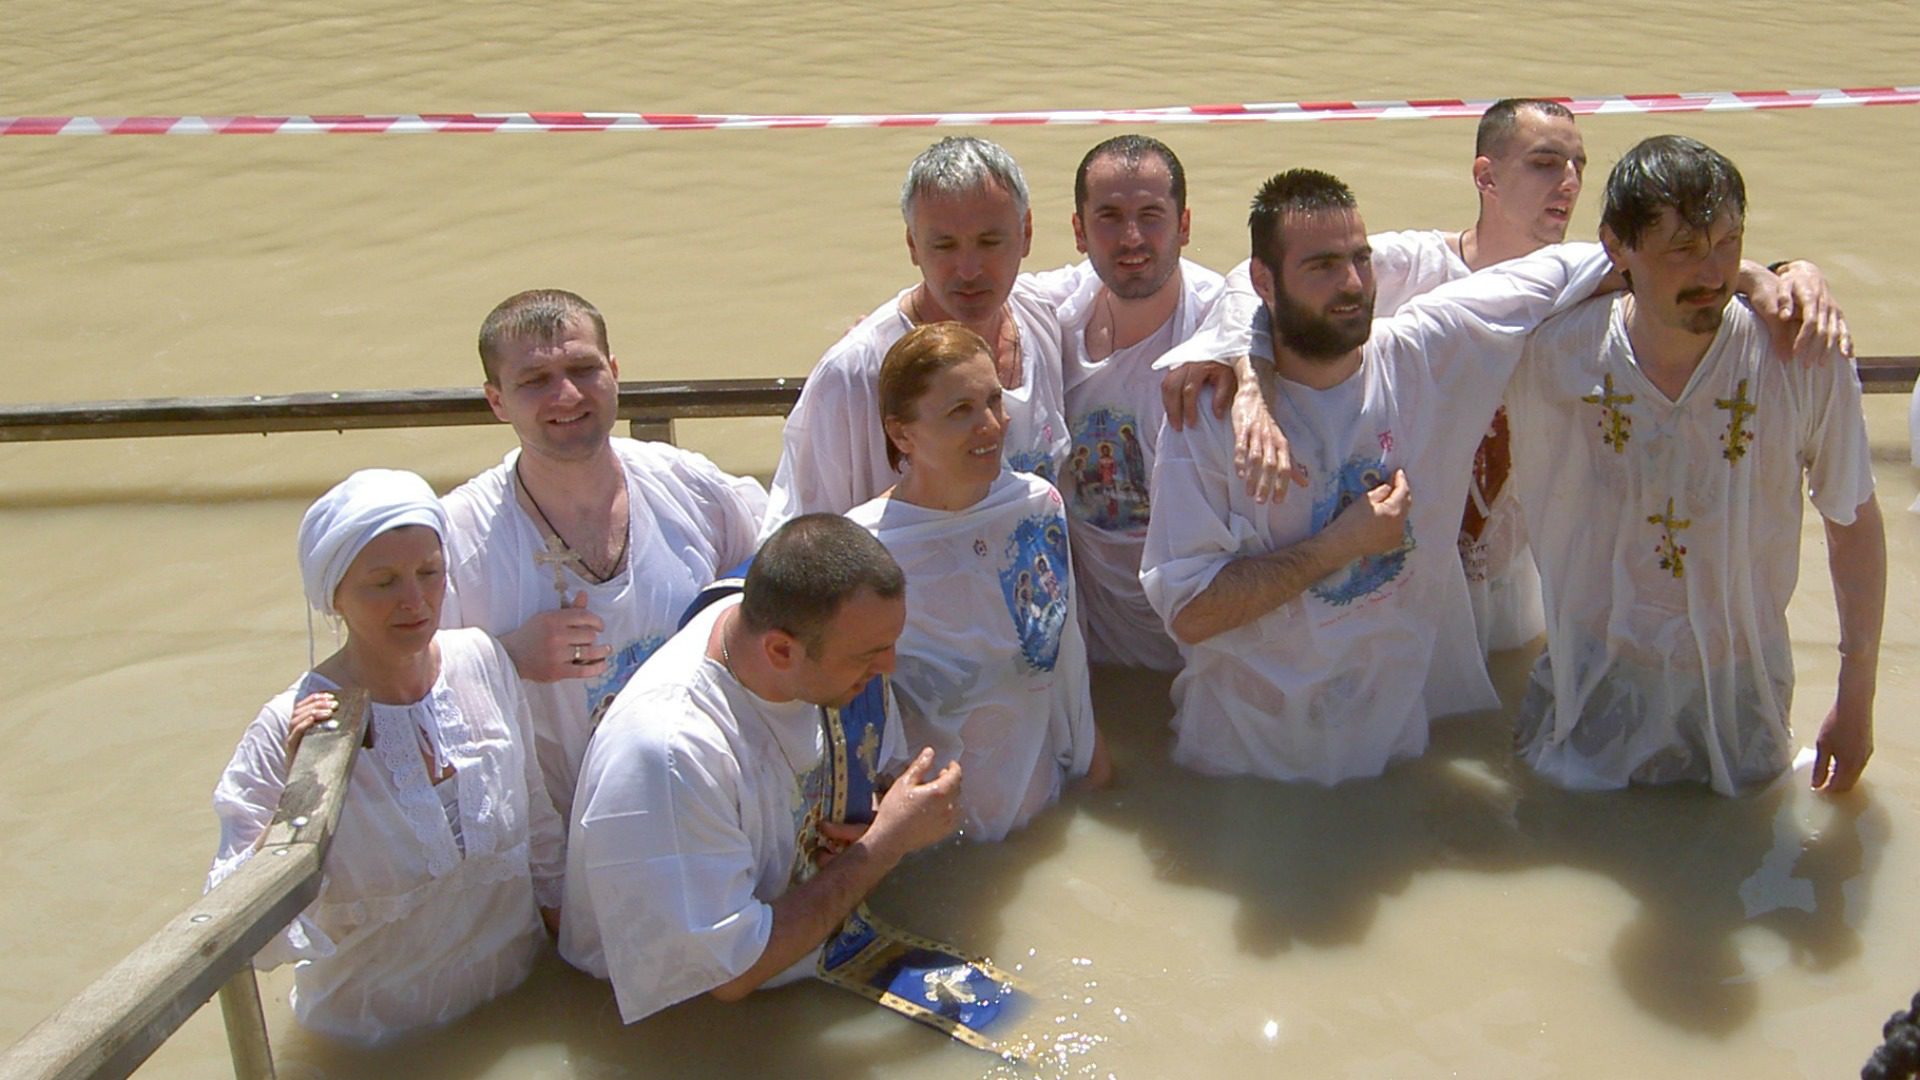 Des pèlerins participent à une cérémonie de baptême dans le Jourdain. (Flickr/IDF/CC BY-NC 2.0)